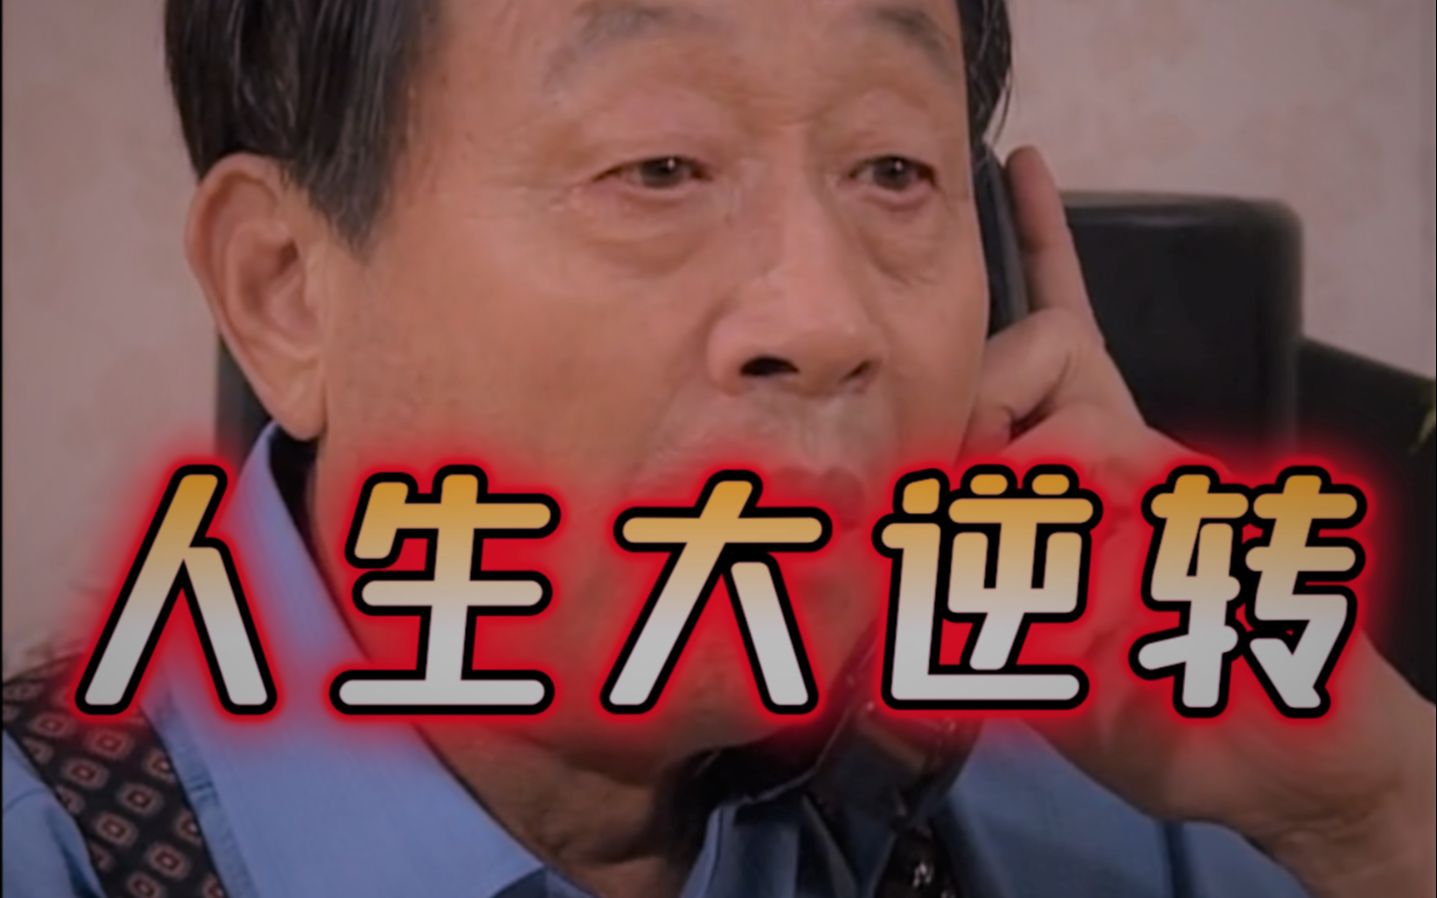 【泡菜奶酪微笑1080P】国语版 第12集 鸠占鹊巢-成大事啊刘大志-成大事啊刘大志-哔哩哔哩视频